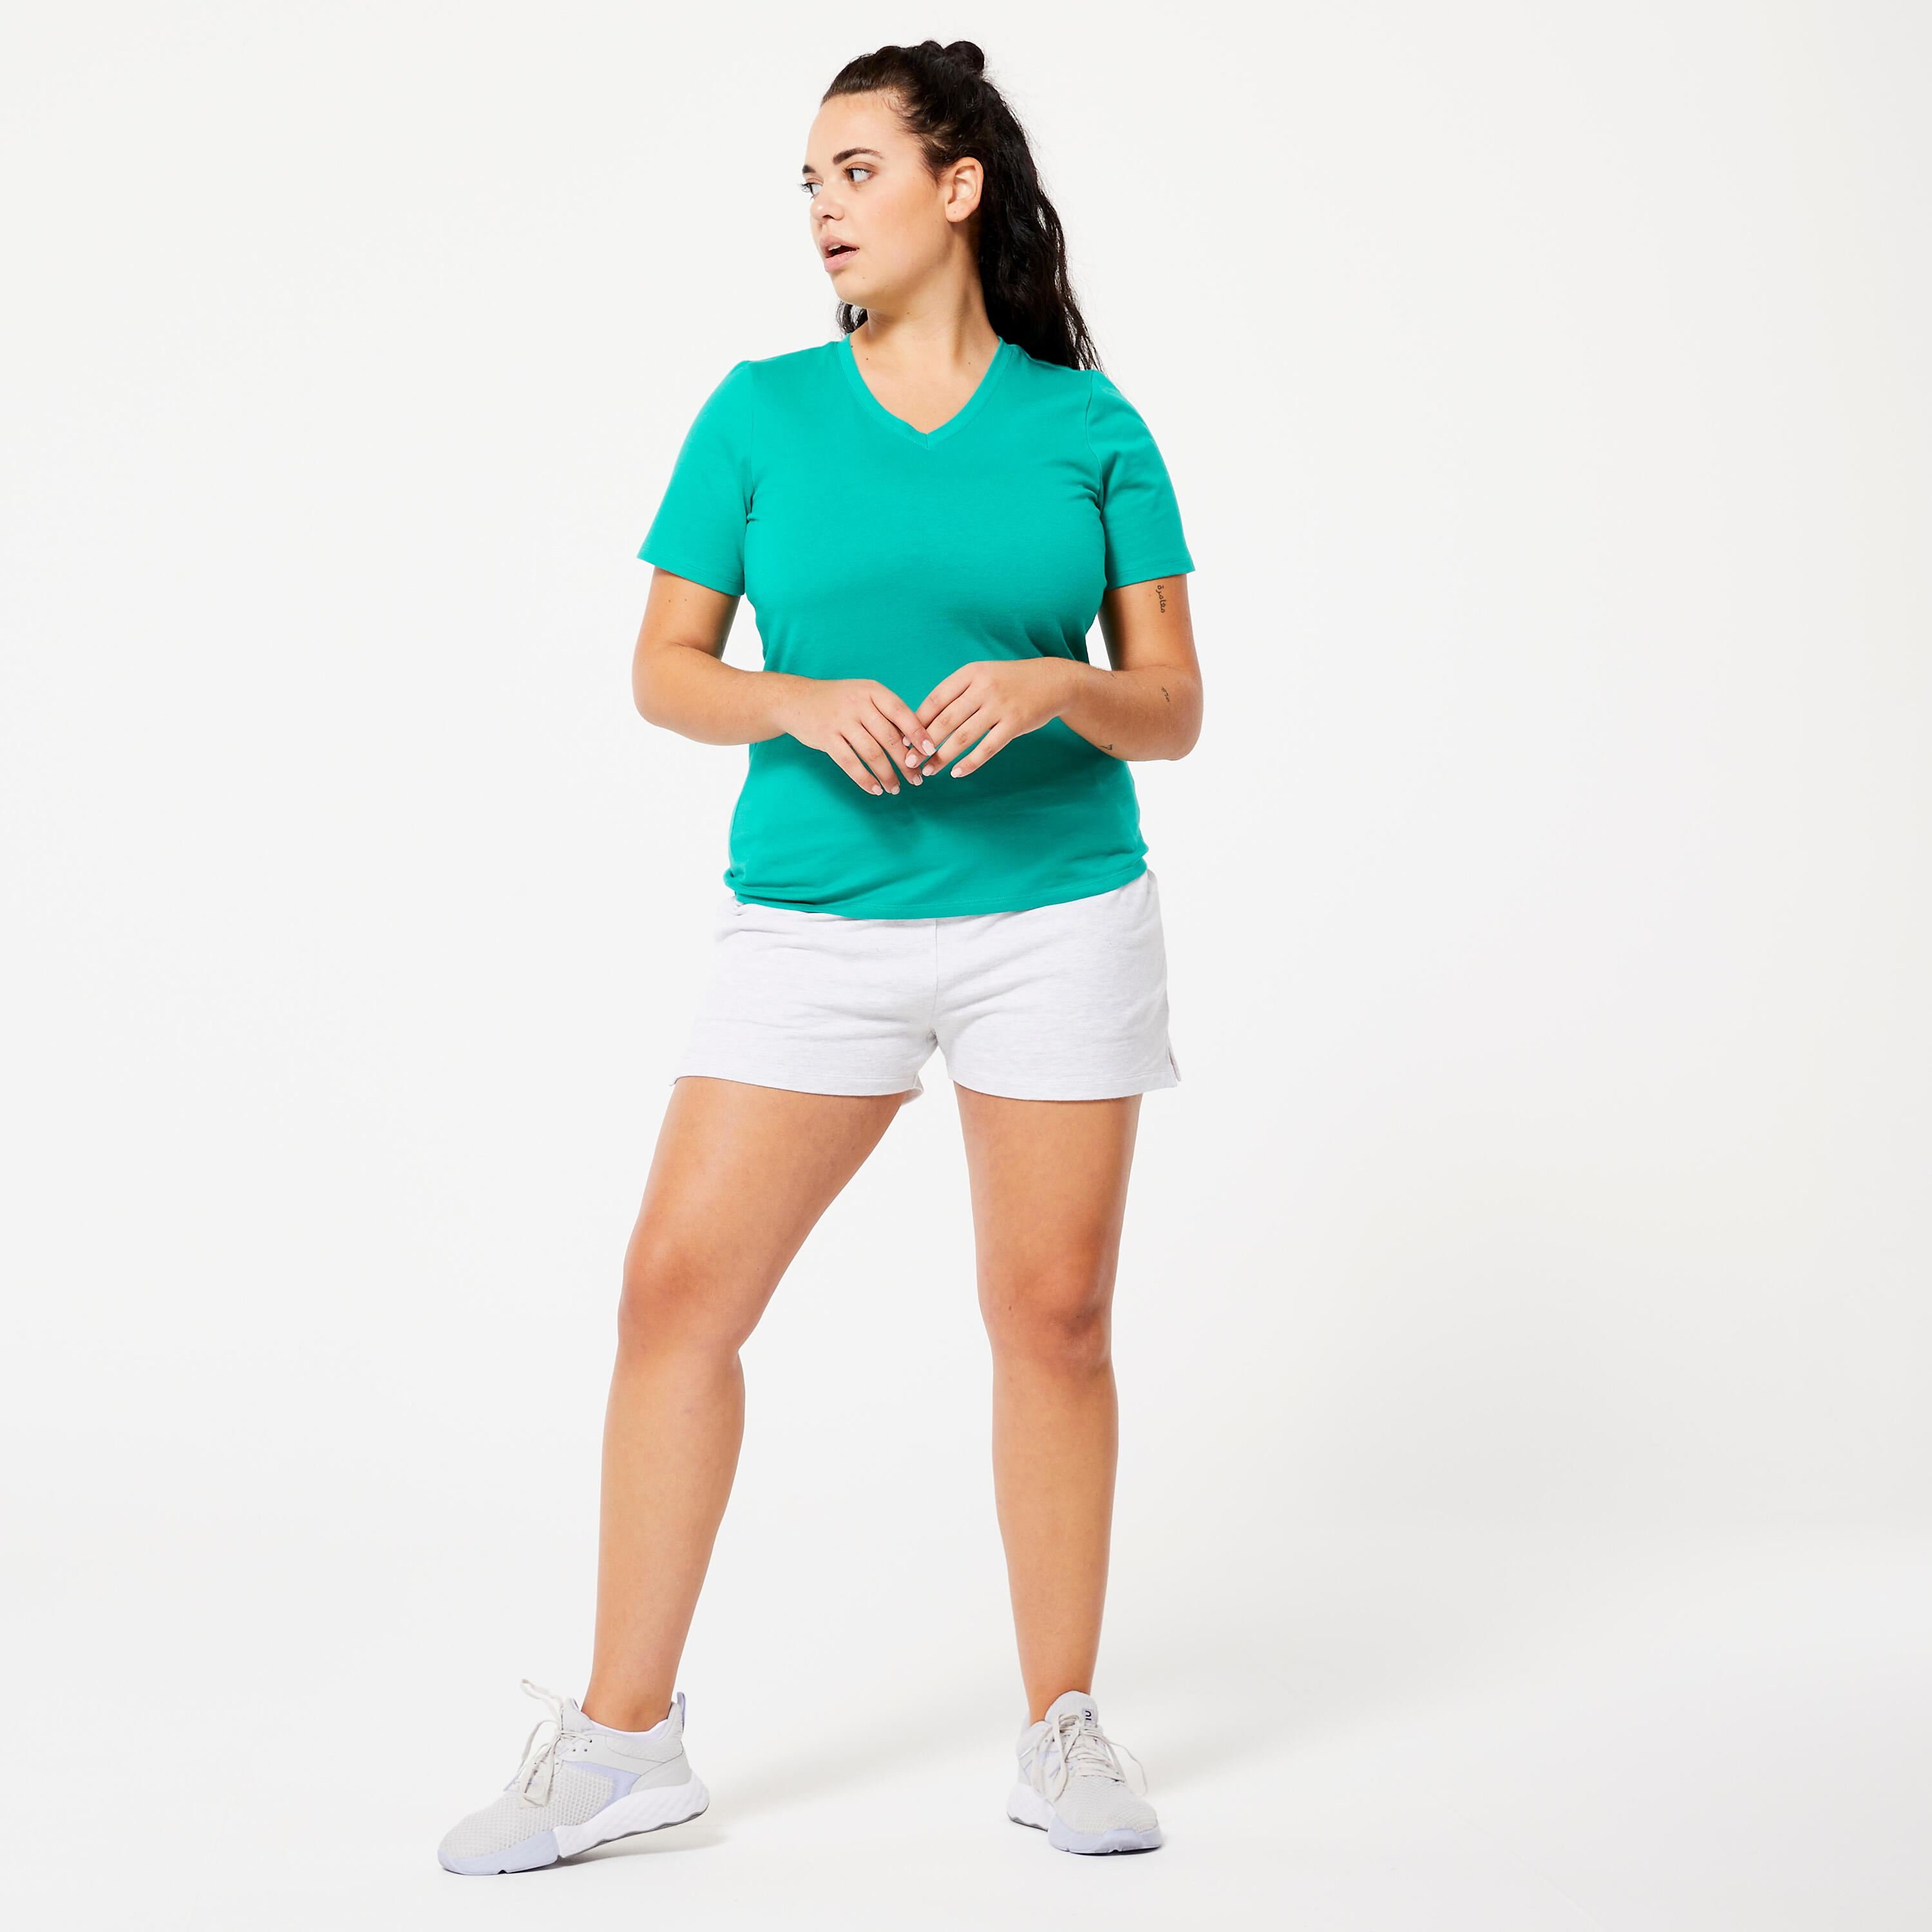 Women's V-Neck Fitness T-Shirt 500 - Caribbean Green 2/5